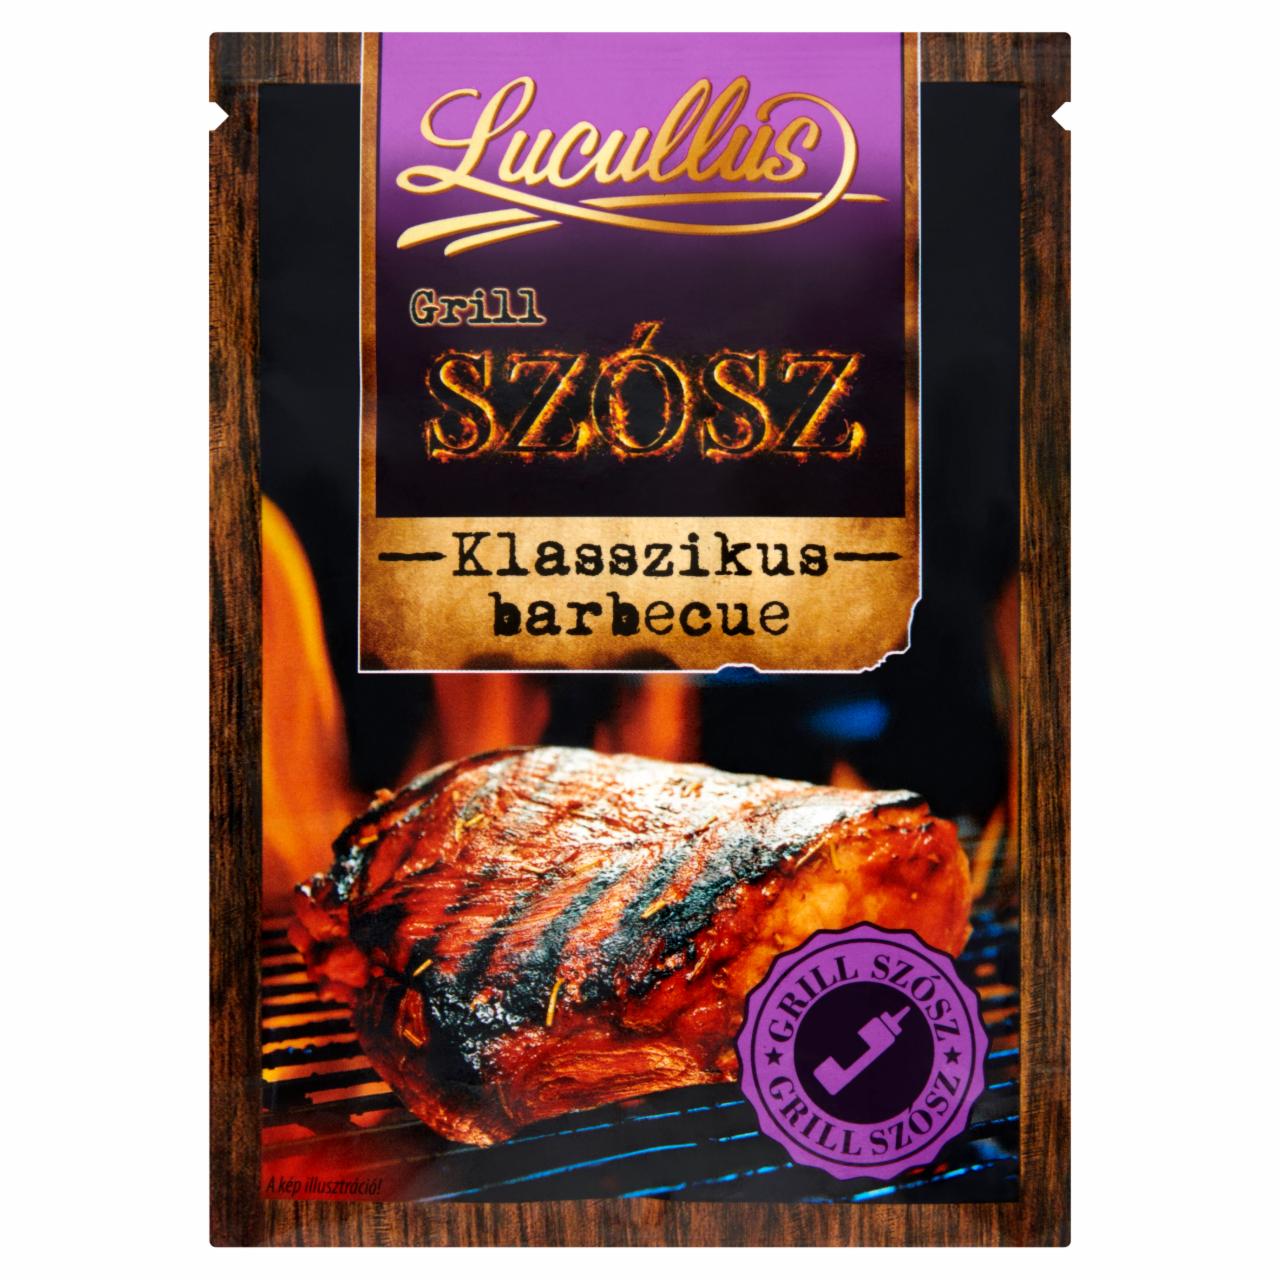 Képek - Lucullus Grill szósz klasszikus barbecue szósz por 28 g